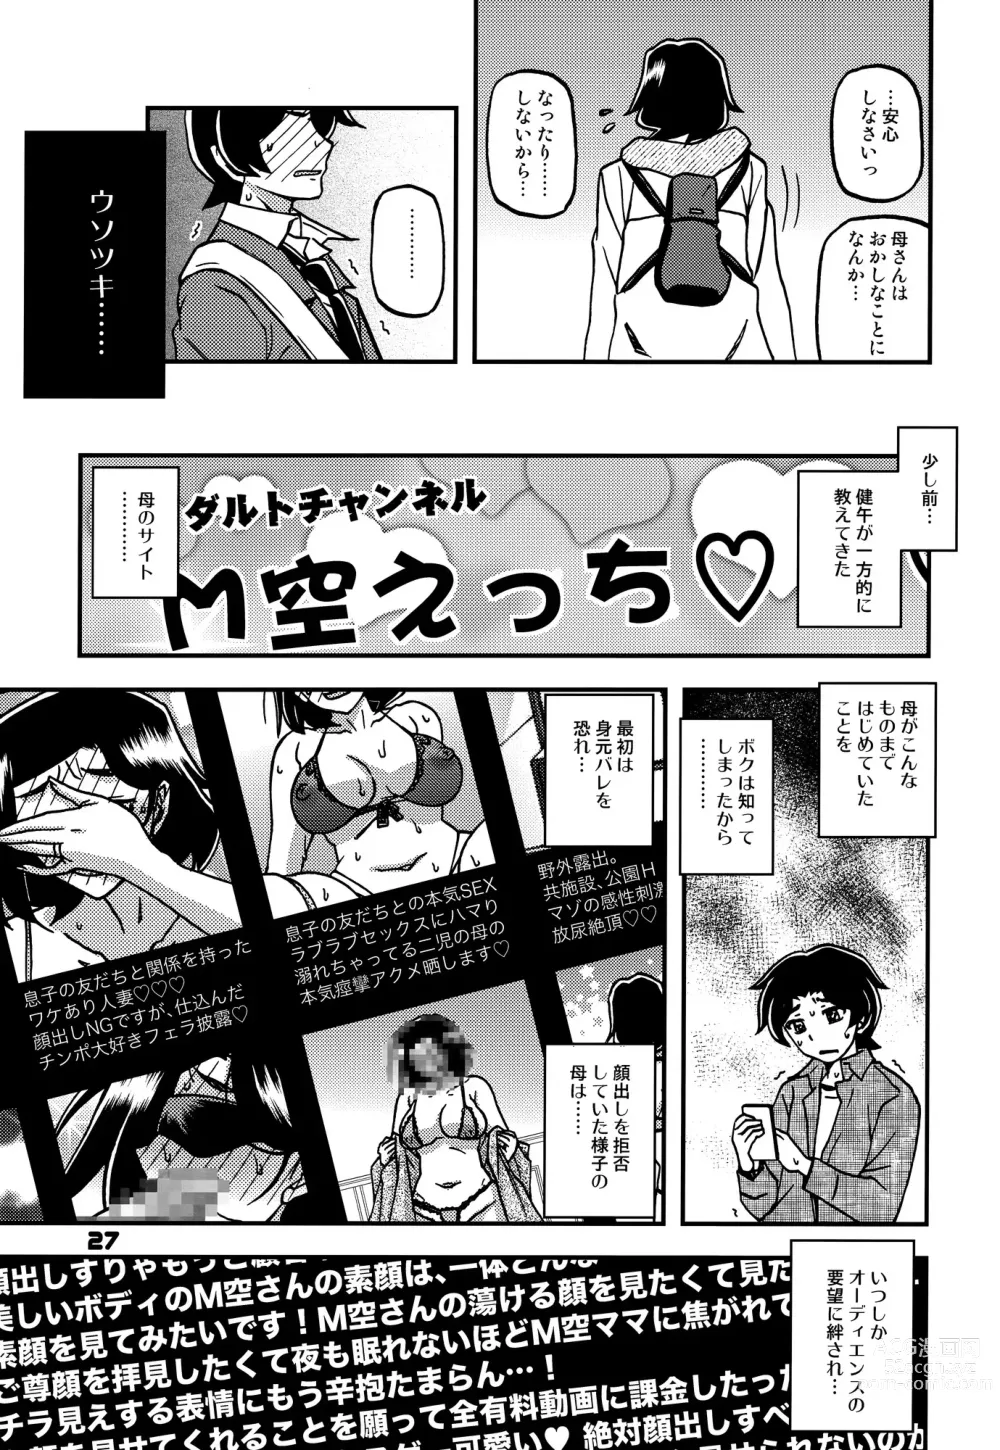 Page 26 of doujinshi Akebi no Mi - Misora AFTER